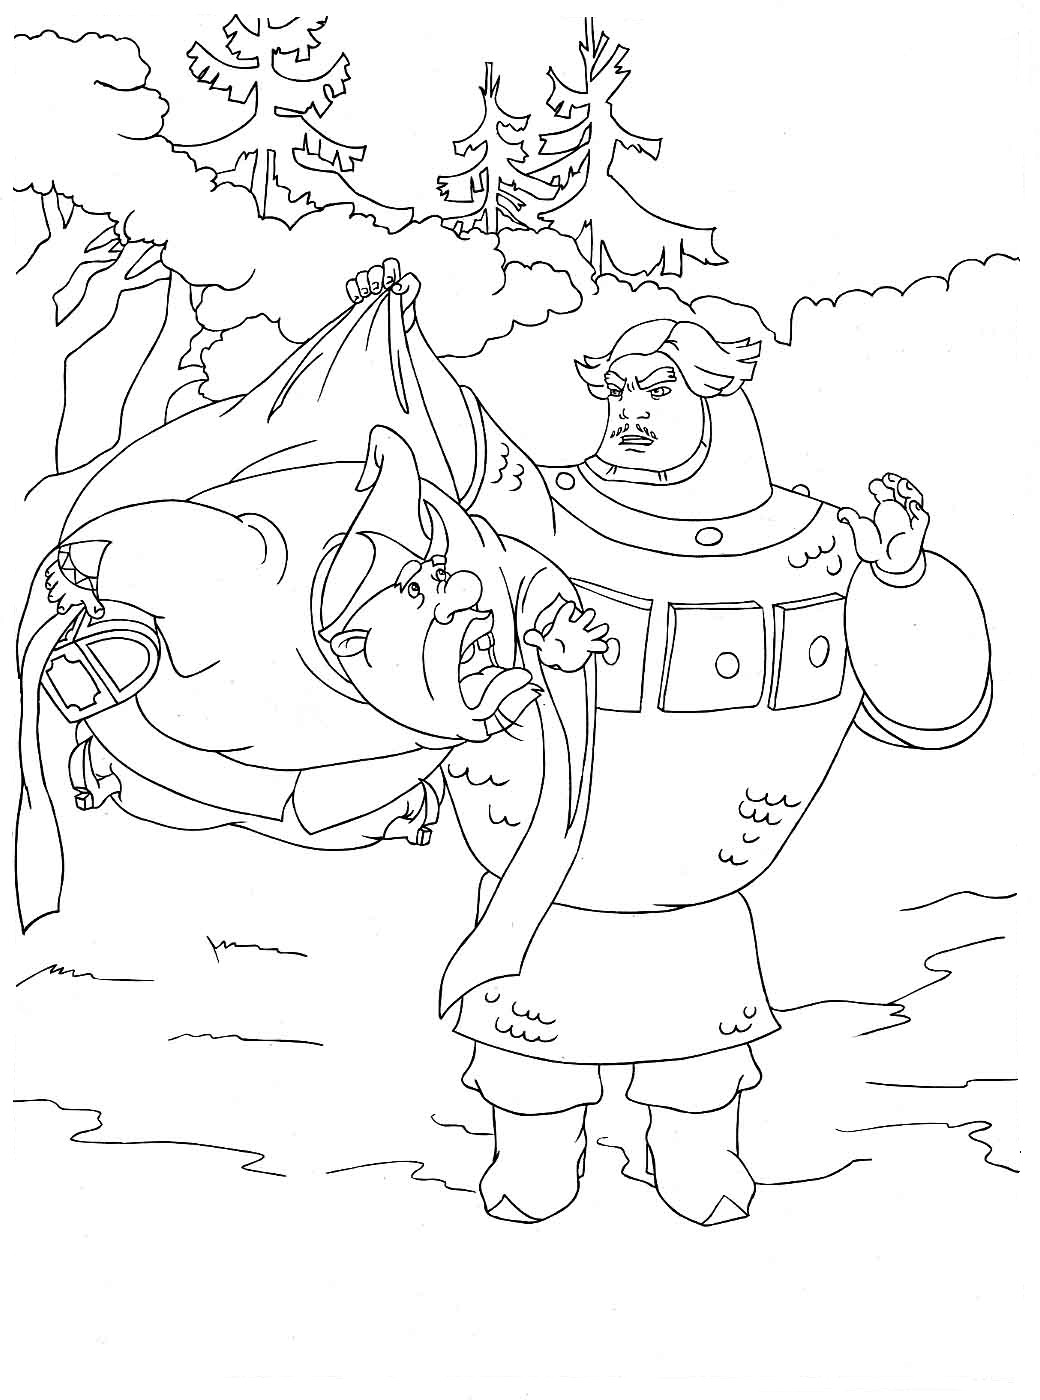 Рисунок к былине Илья Муромец и Соловей разбойник